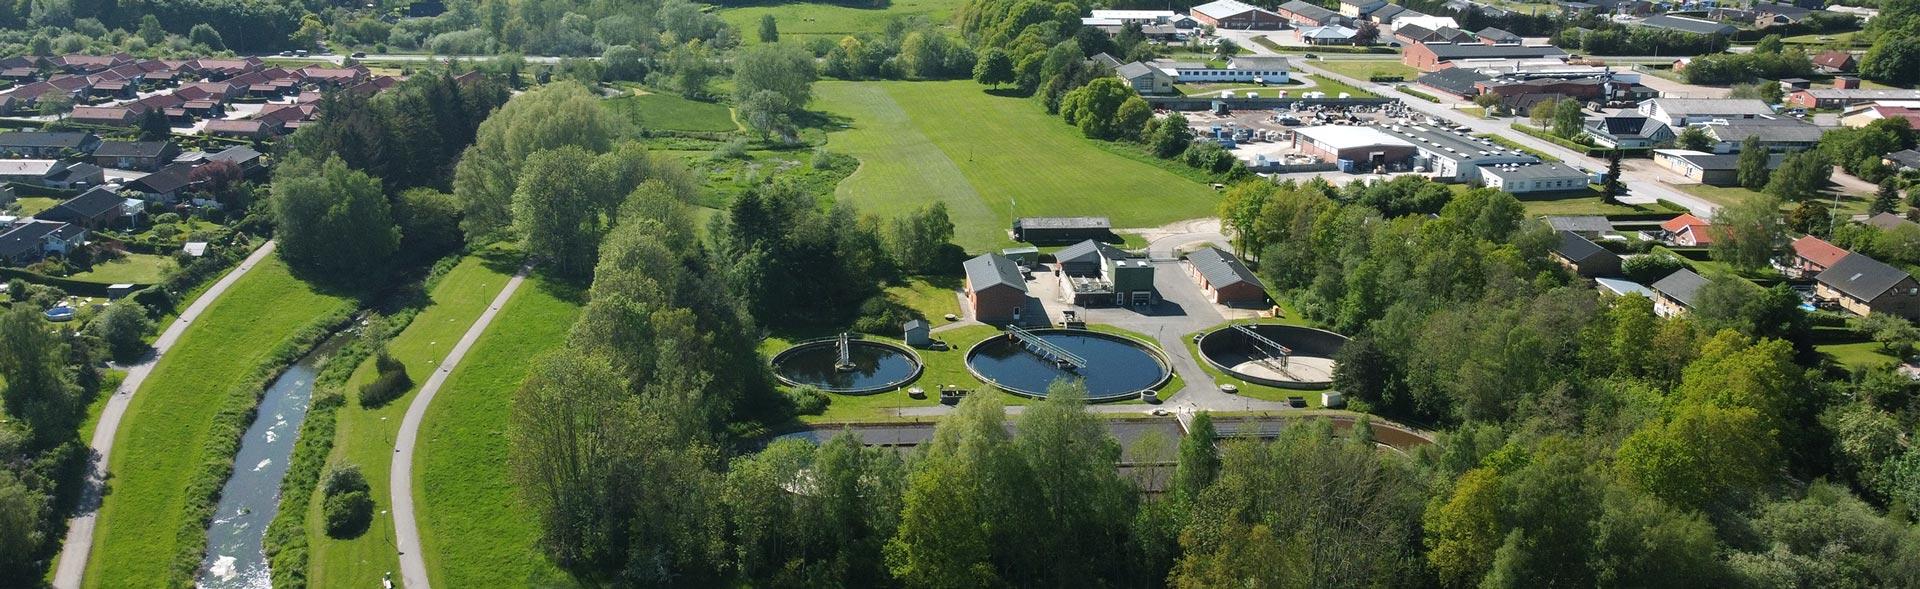 Luftfoto af Lilleåparken og renseanlæg i Hadsten